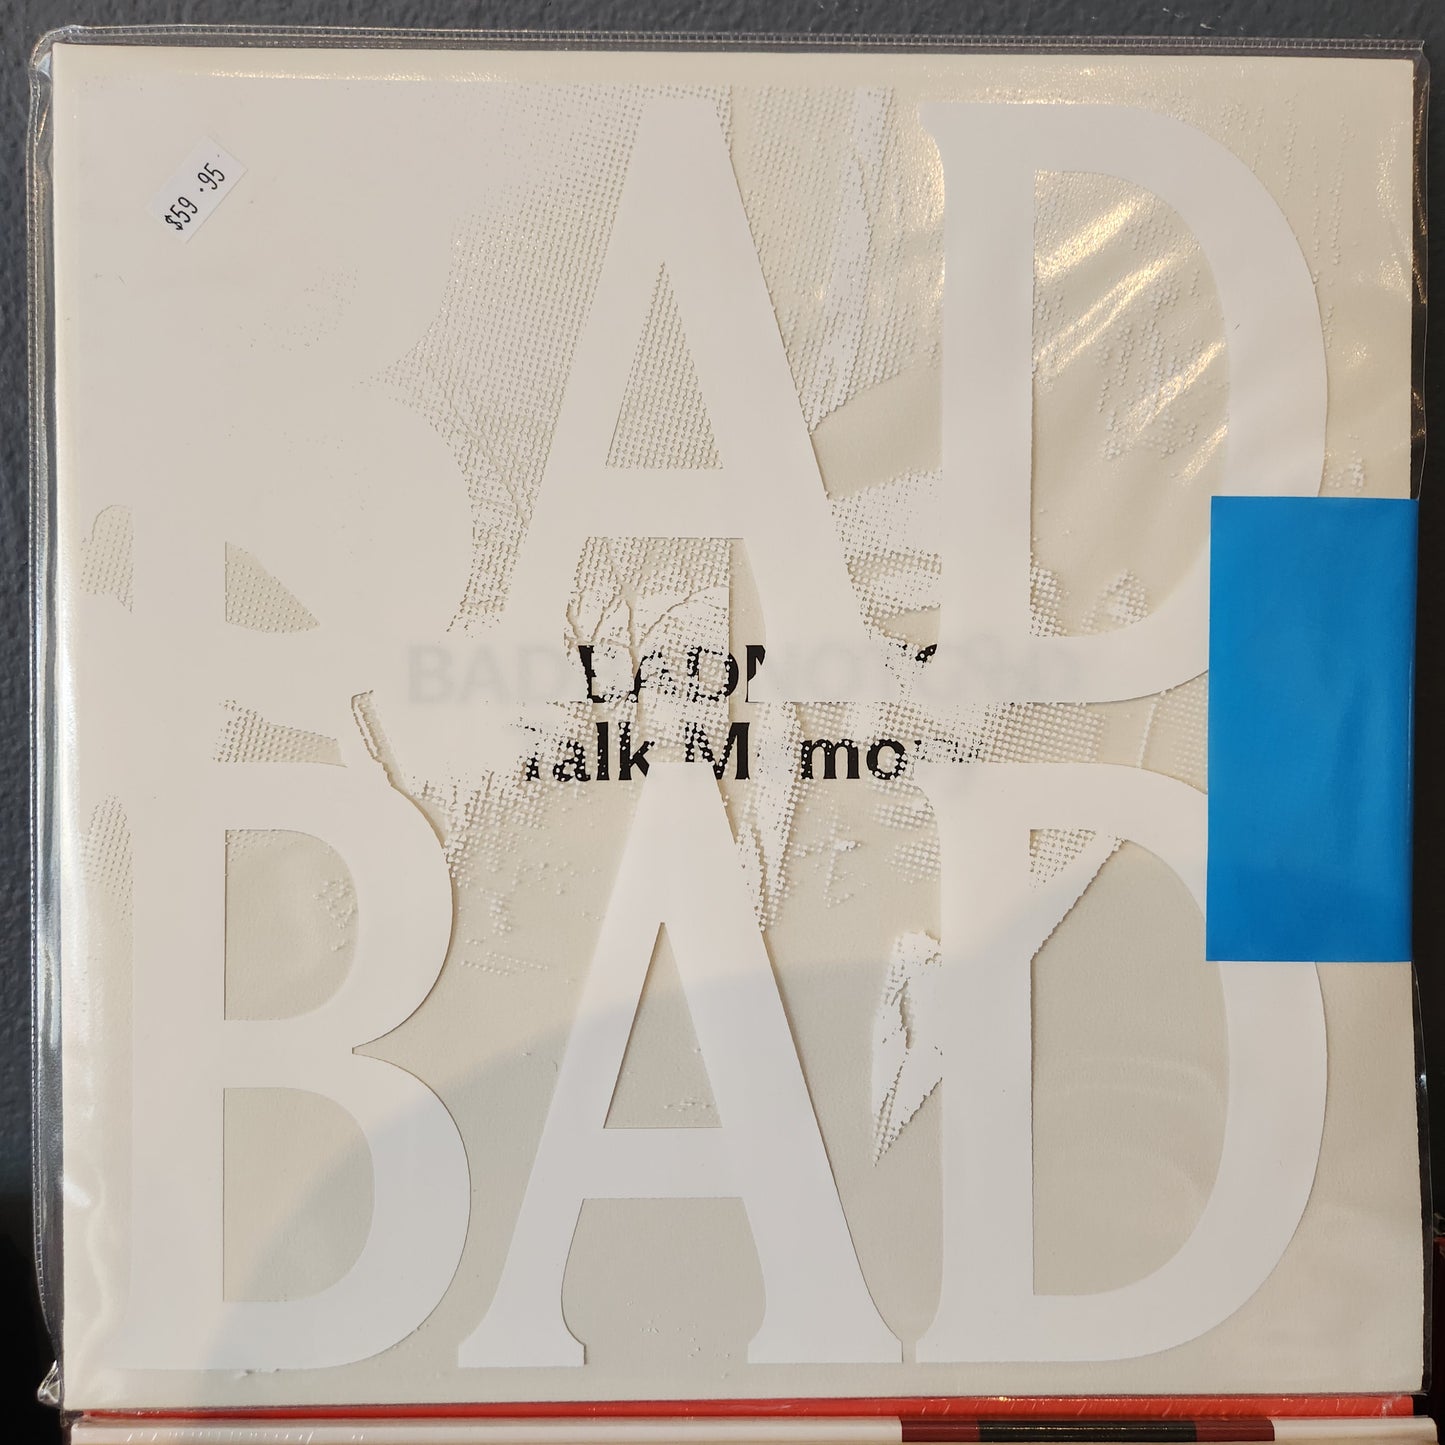 BADBADNOTGOOD - Talk Memory - Double Vinyl LP